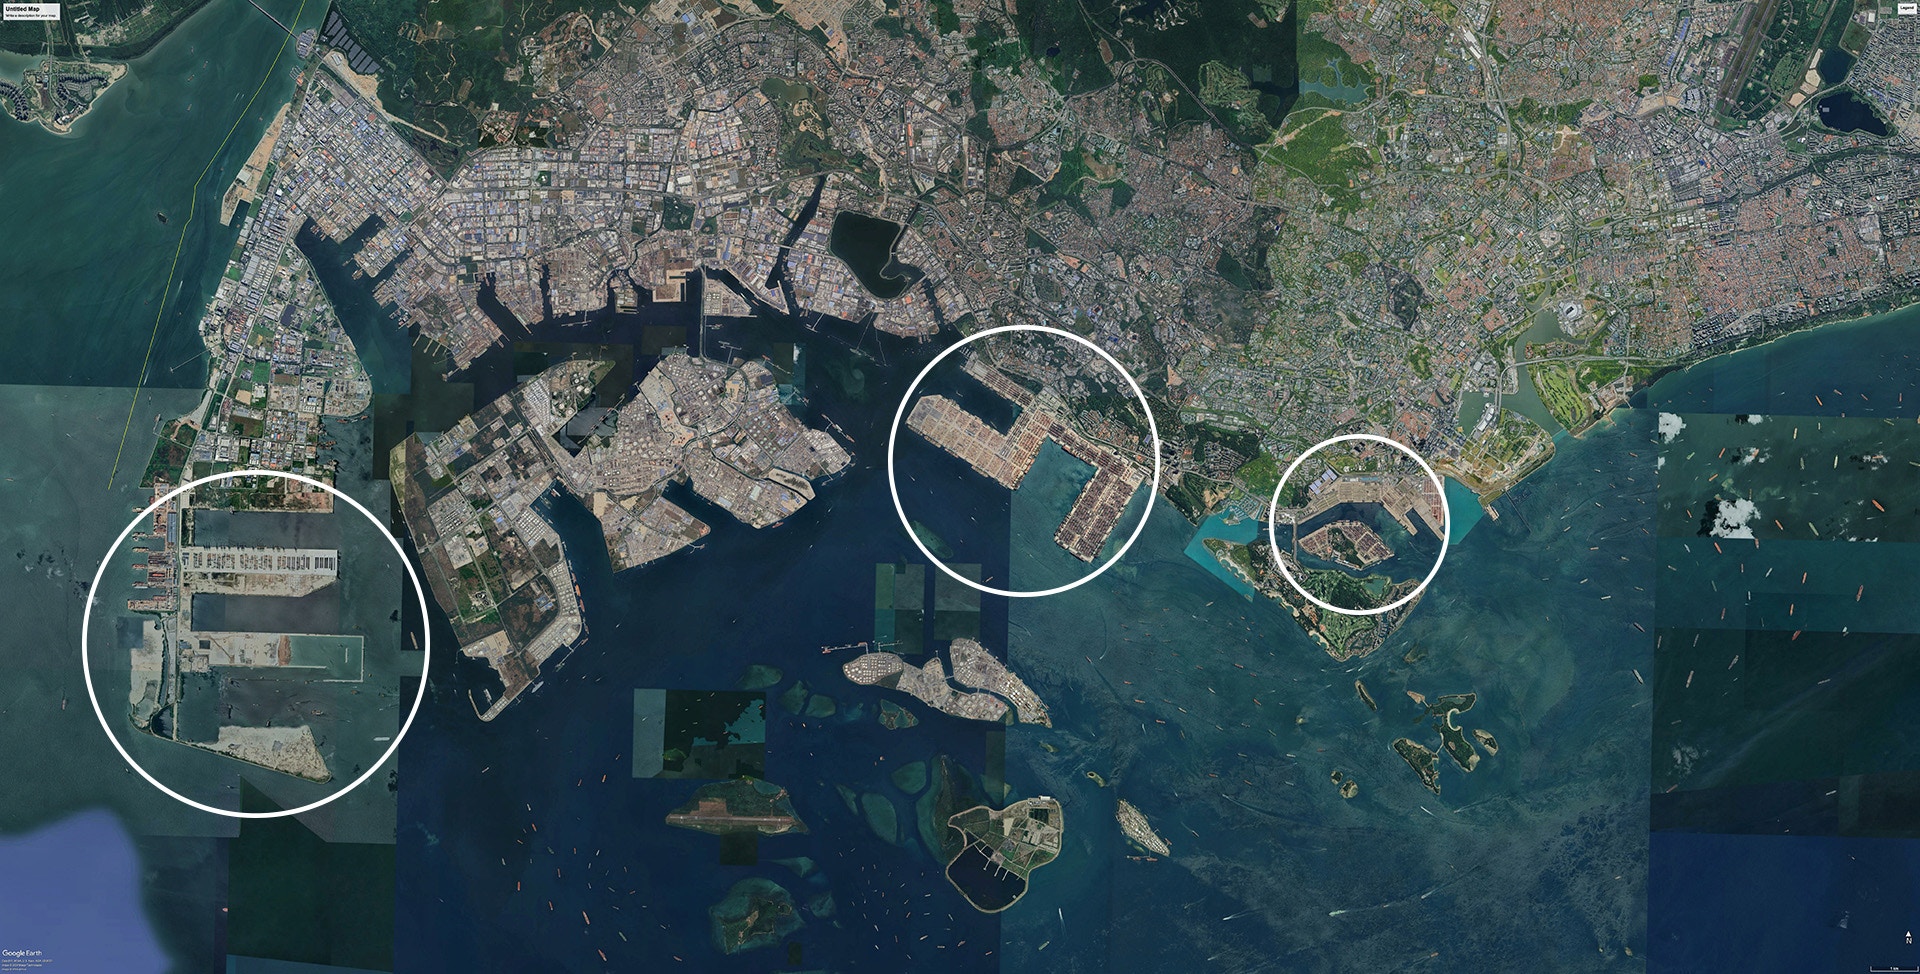 新加坡城市码头（City Terminals）位于闹市（右圈），巴西班让码头（Pasir Panjang Terminal）亦邻近市区（中圈），两个码头即将停用。「大士超级港」（Tuas Mega Port）位于西部填海区（左圈），第一期已启用。（Google Earth）